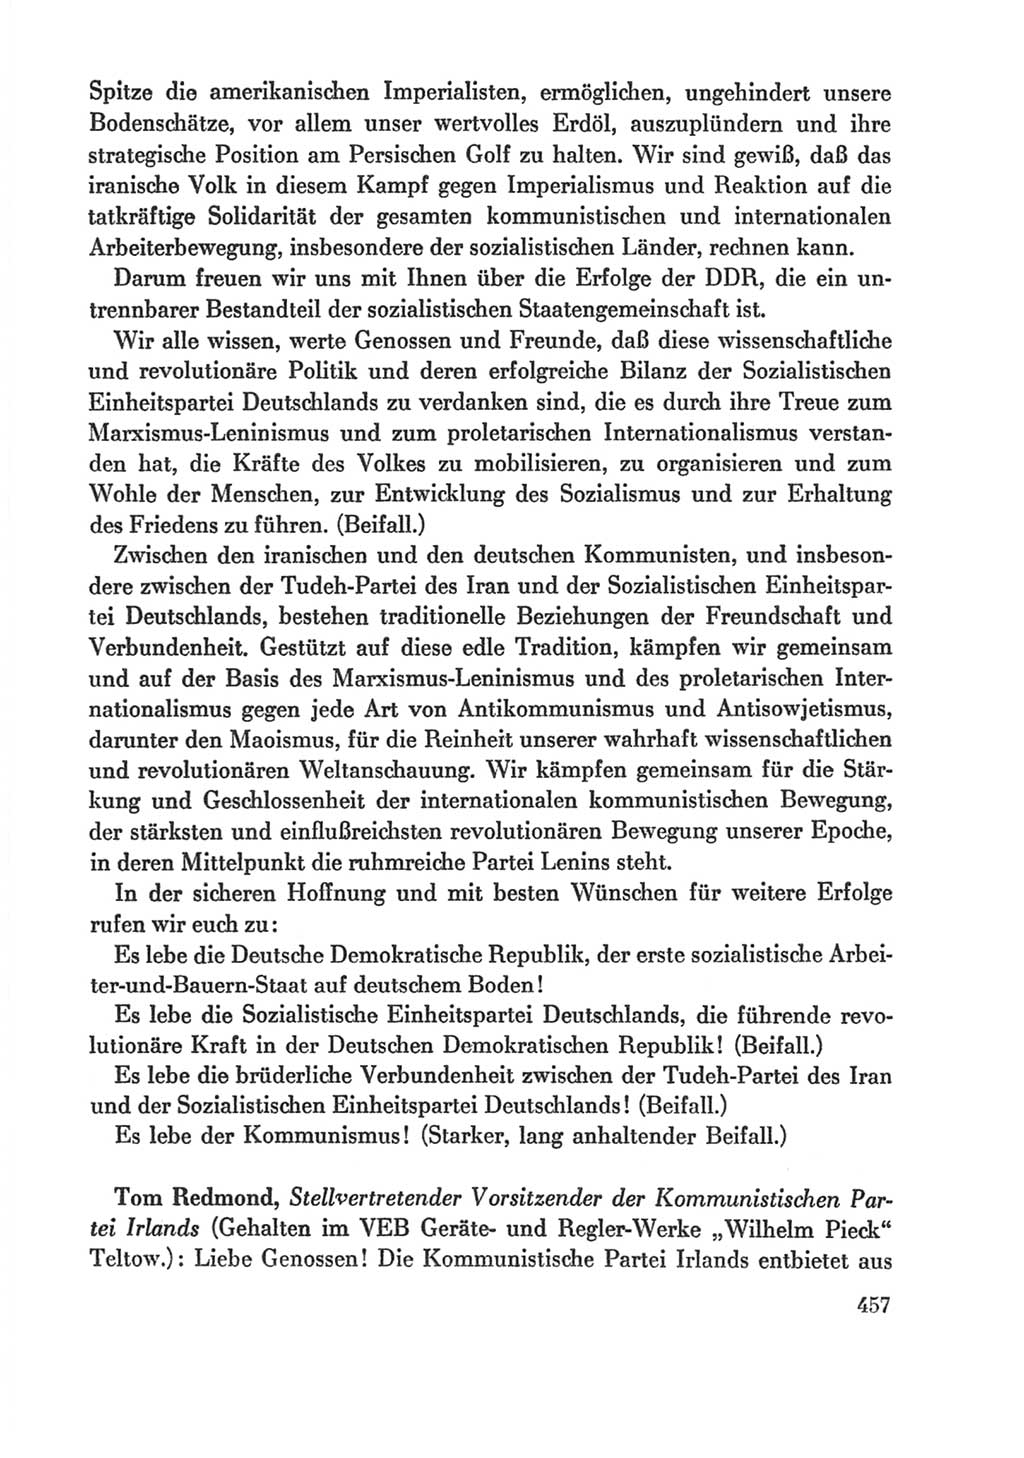 Protokoll der Verhandlungen des Ⅸ. Parteitages der Sozialistischen Einheitspartei Deutschlands (SED) [Deutsche Demokratische Republik (DDR)] 1976, Band 1, Seite 457 (Prot. Verh. Ⅸ. PT SED DDR 1976, Bd. 1, S. 457)